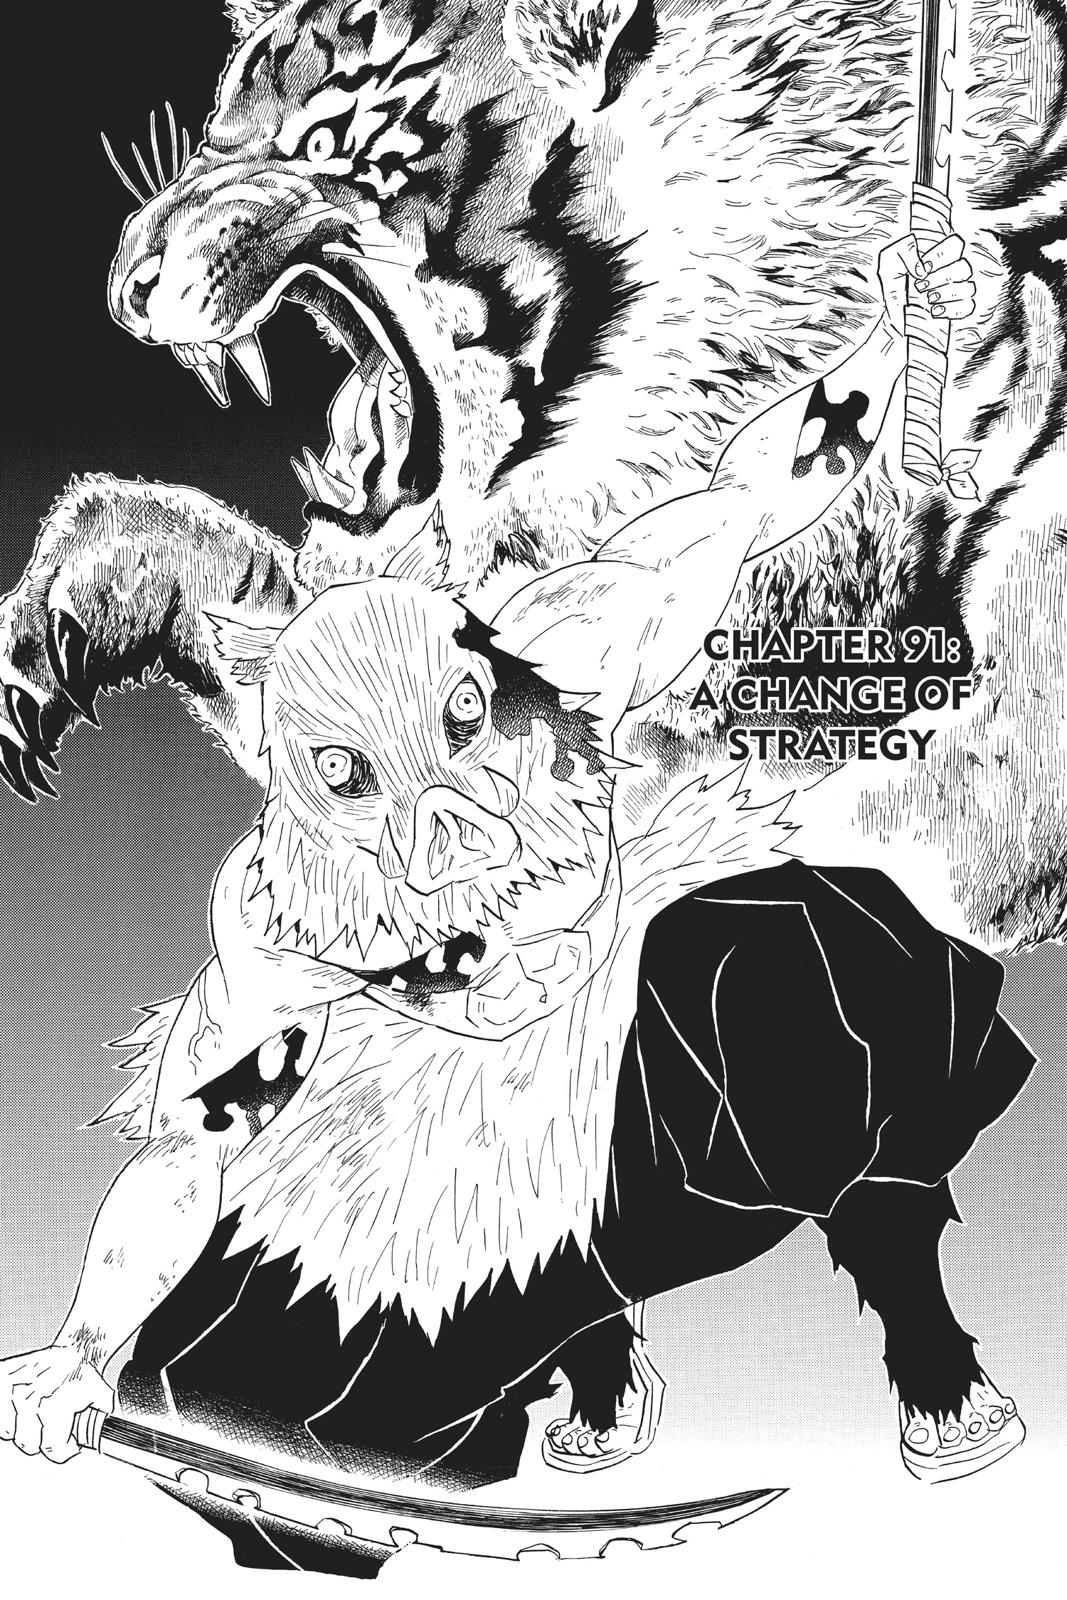 Demon Slayer Manga Manga Chapter - 91 - image 1